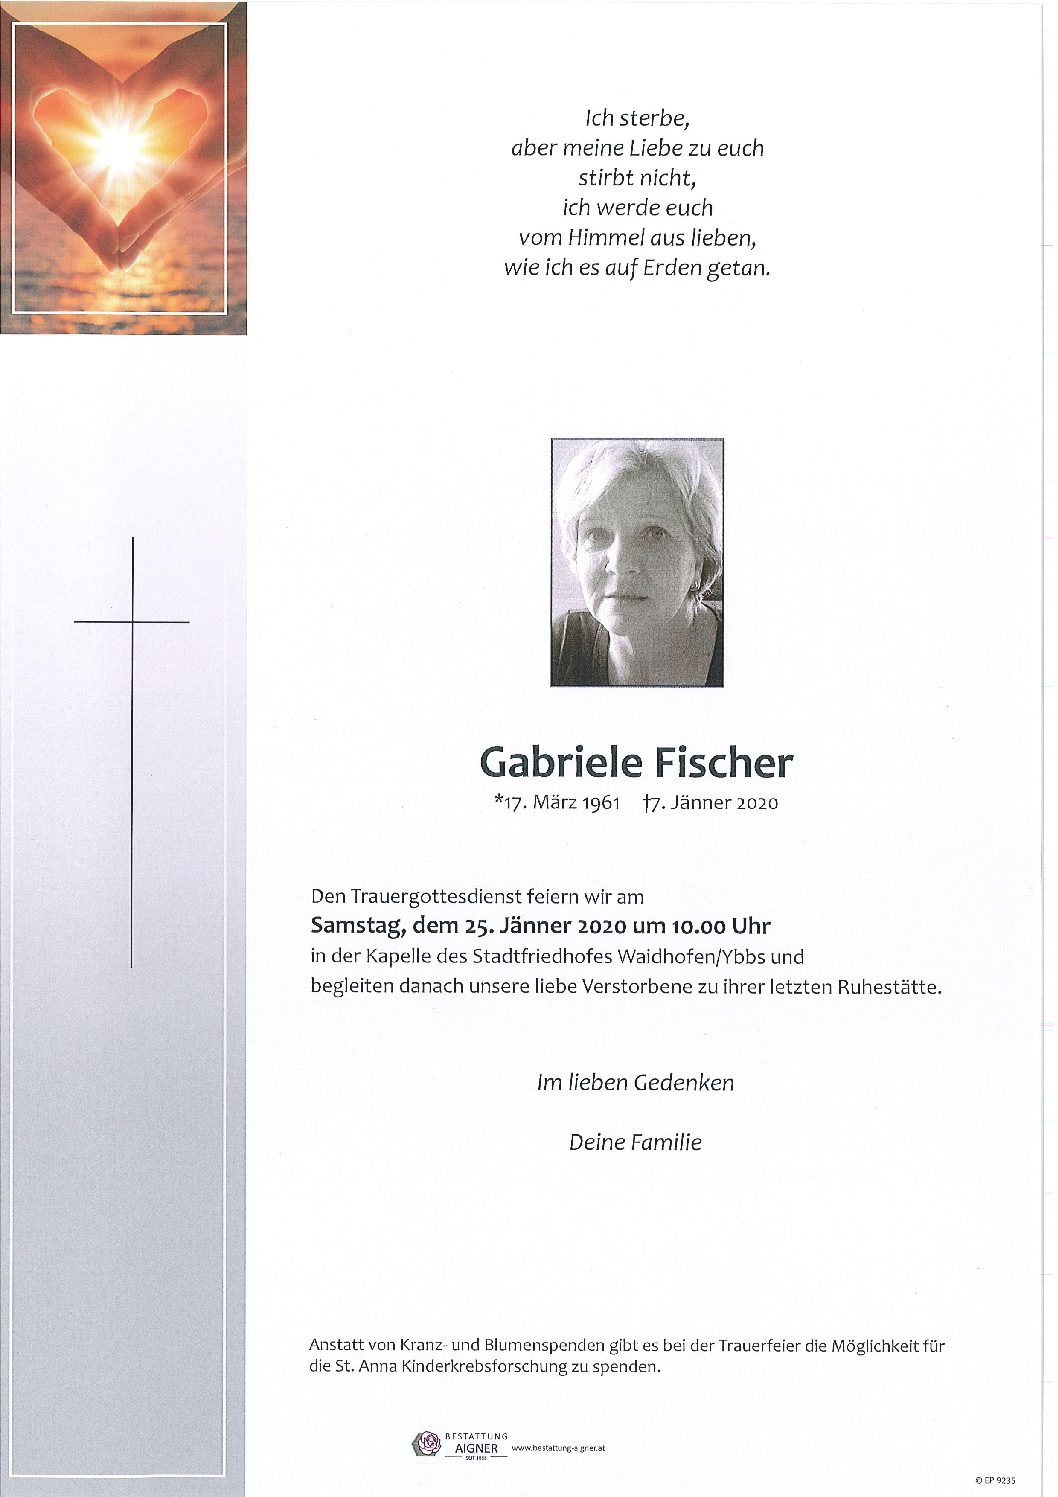 Gabriele Fischer